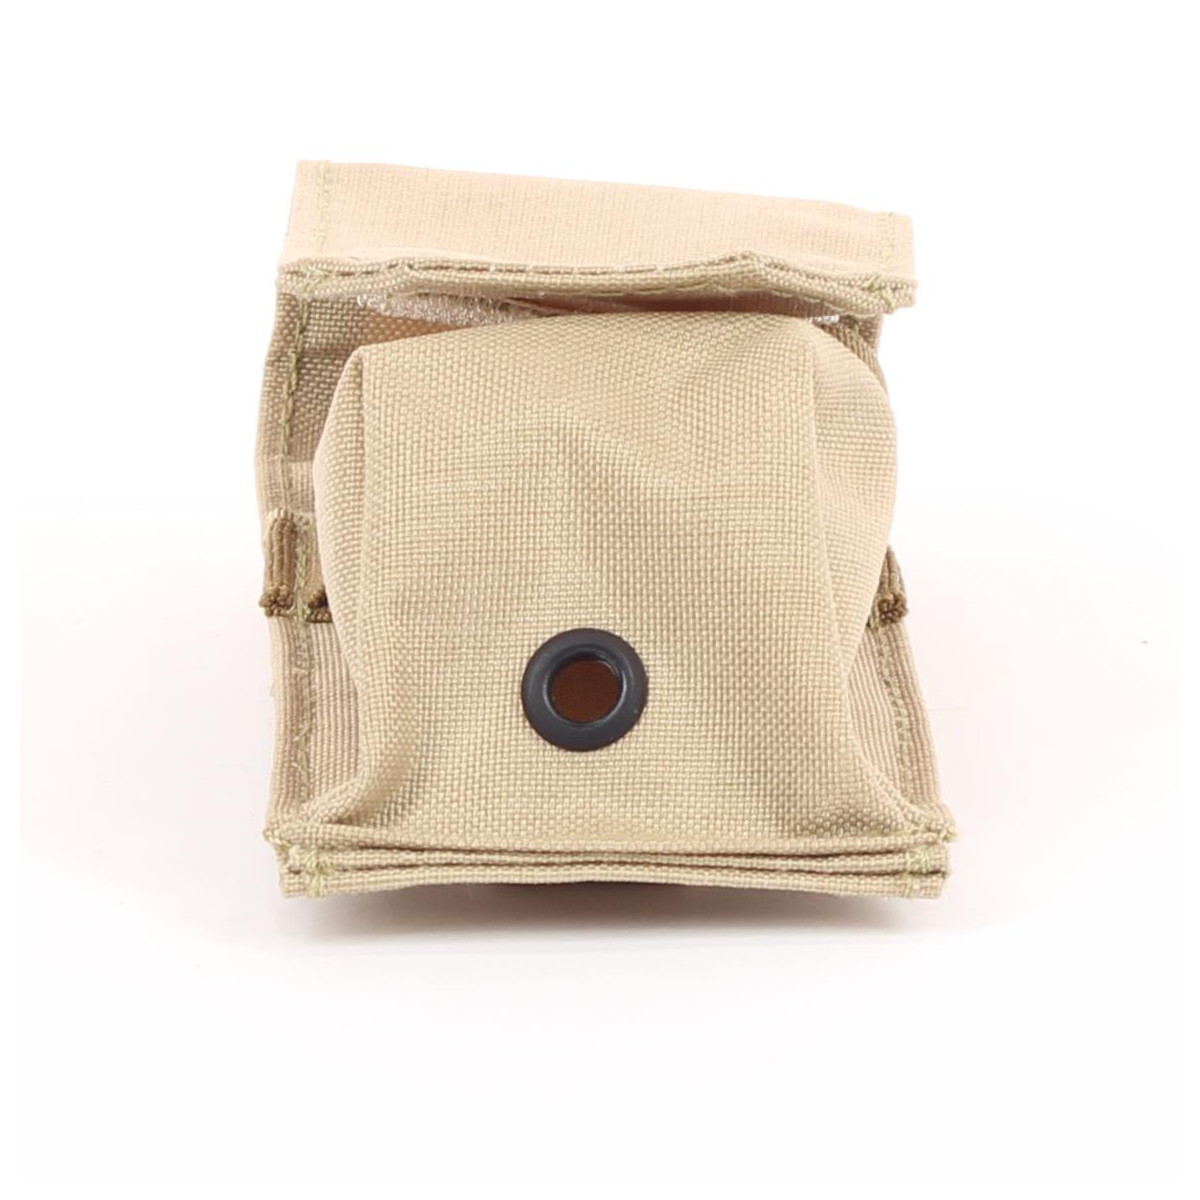 Tourniquet-Tasche Beige – Abflussloch am Boden der Tasche